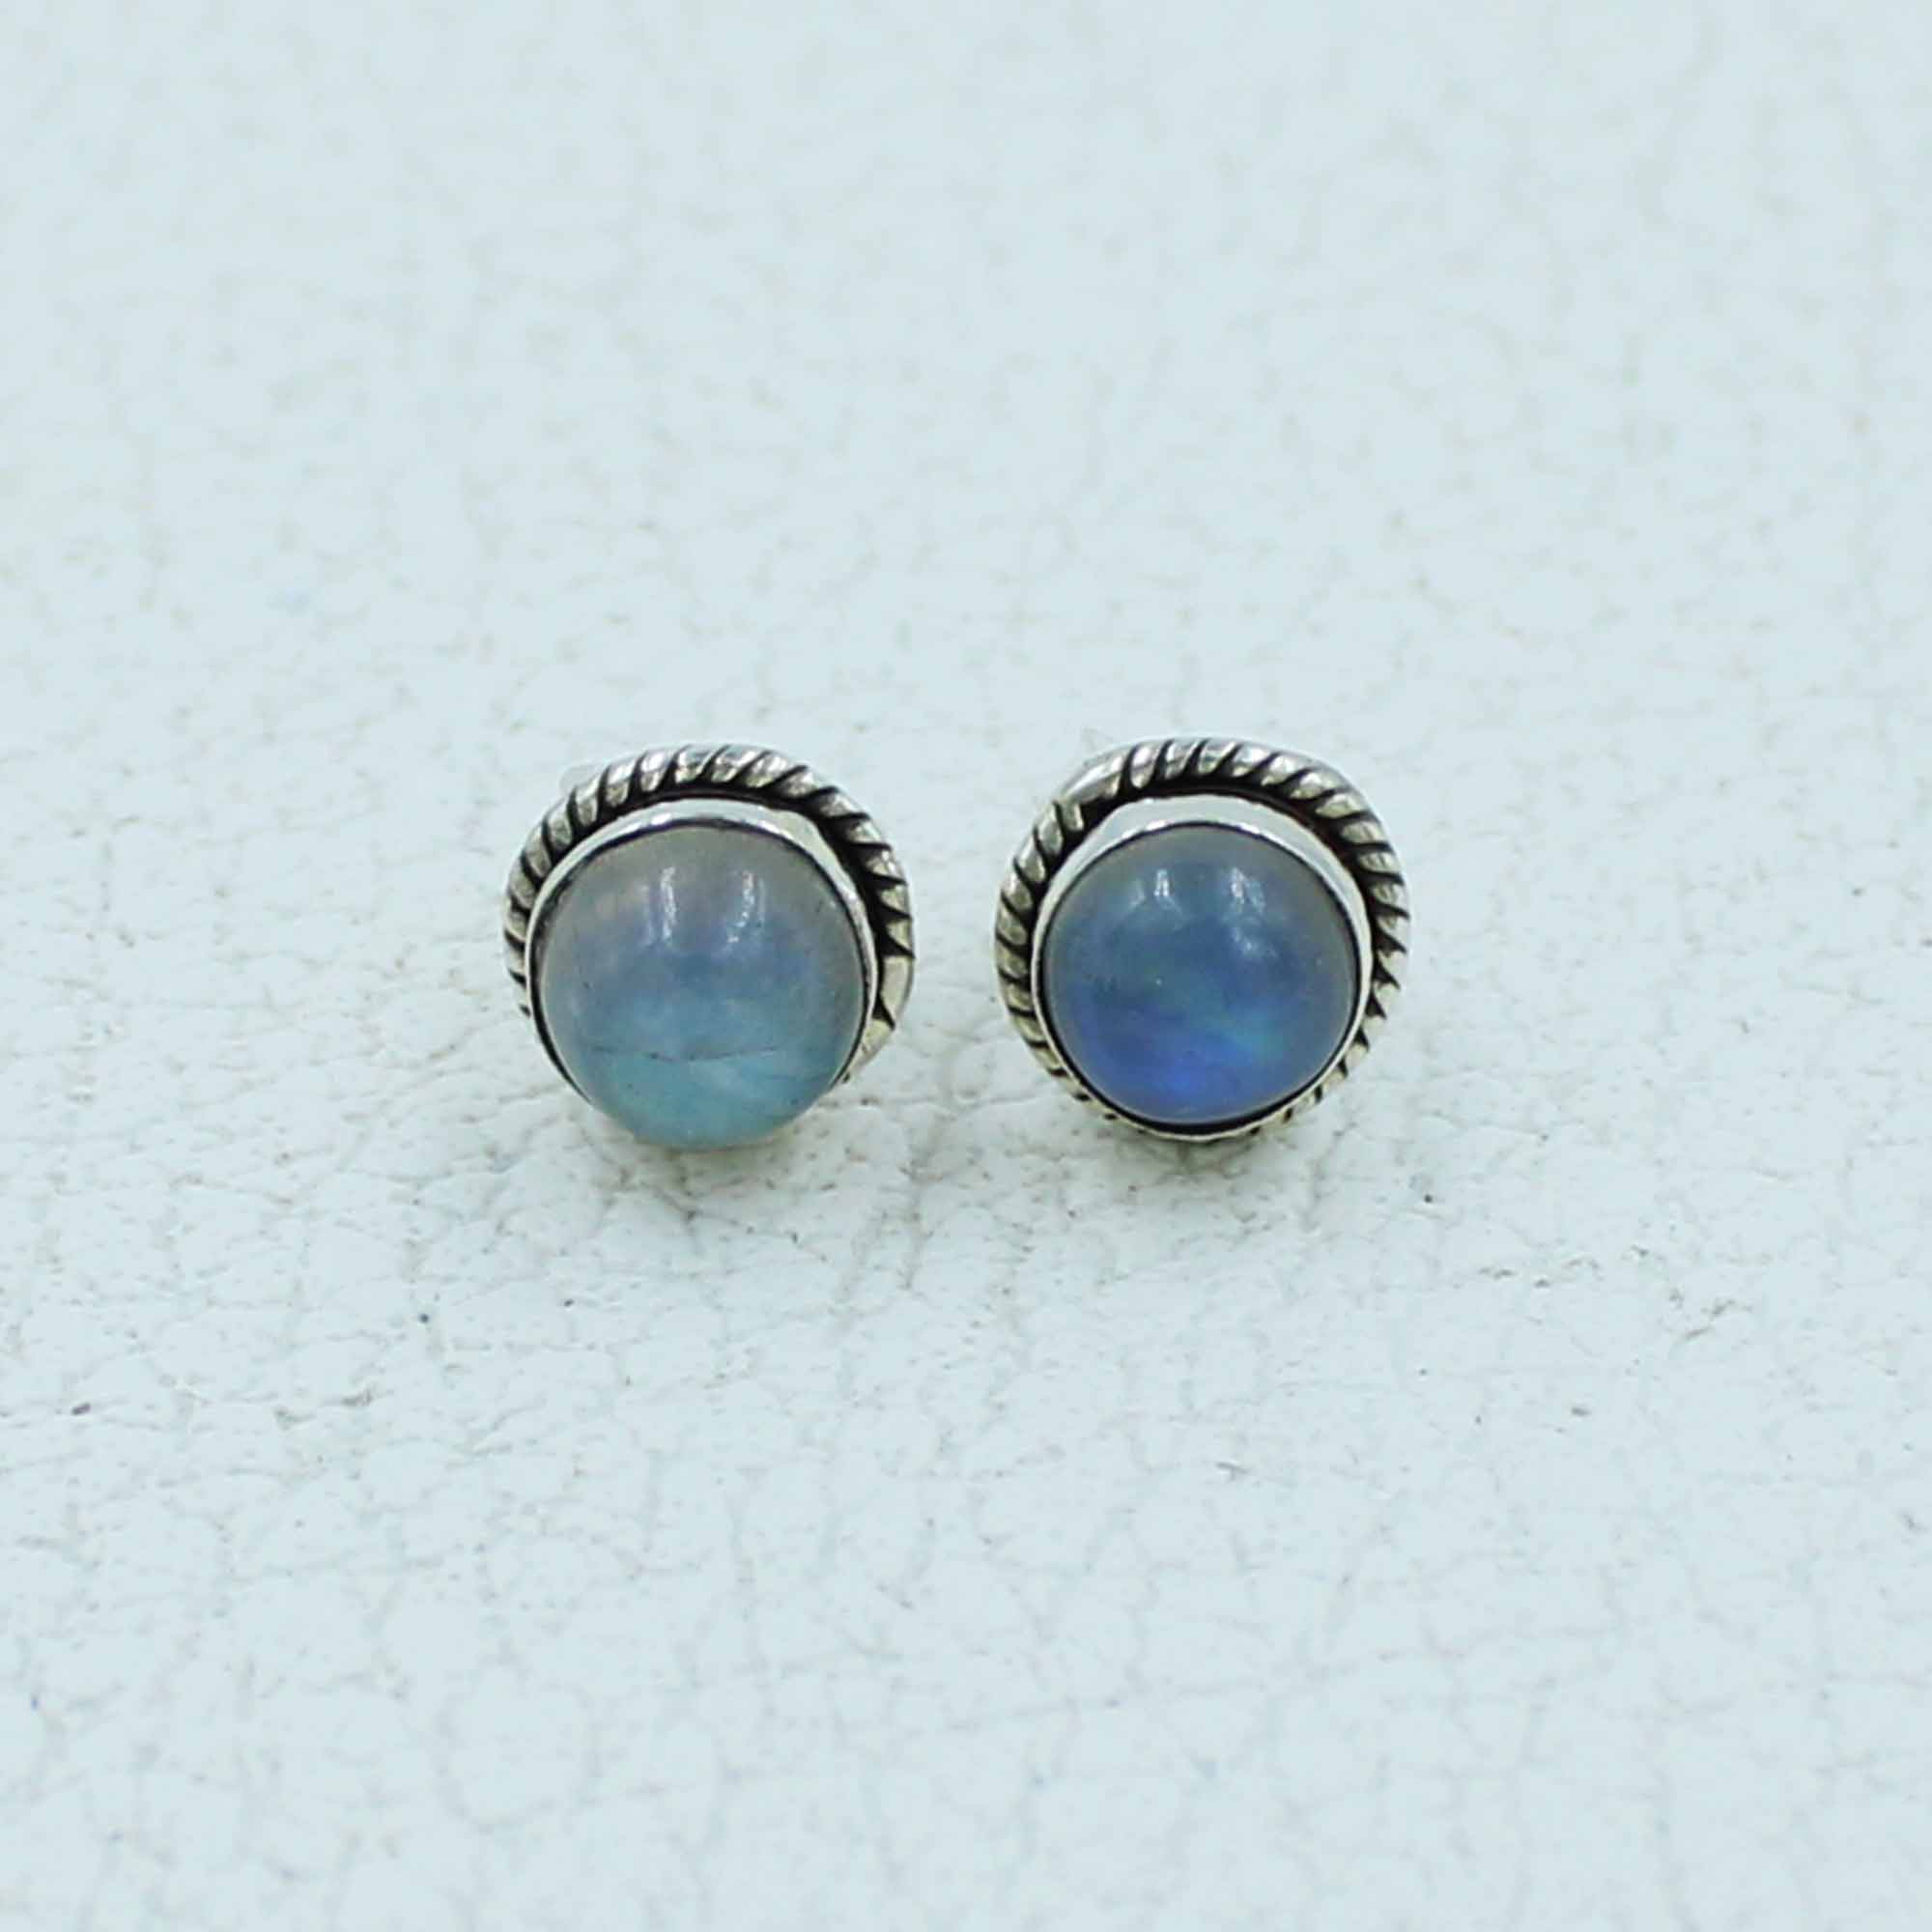 12 Pair Set Moonstone Stud Earrings in 925 Sterling Silver